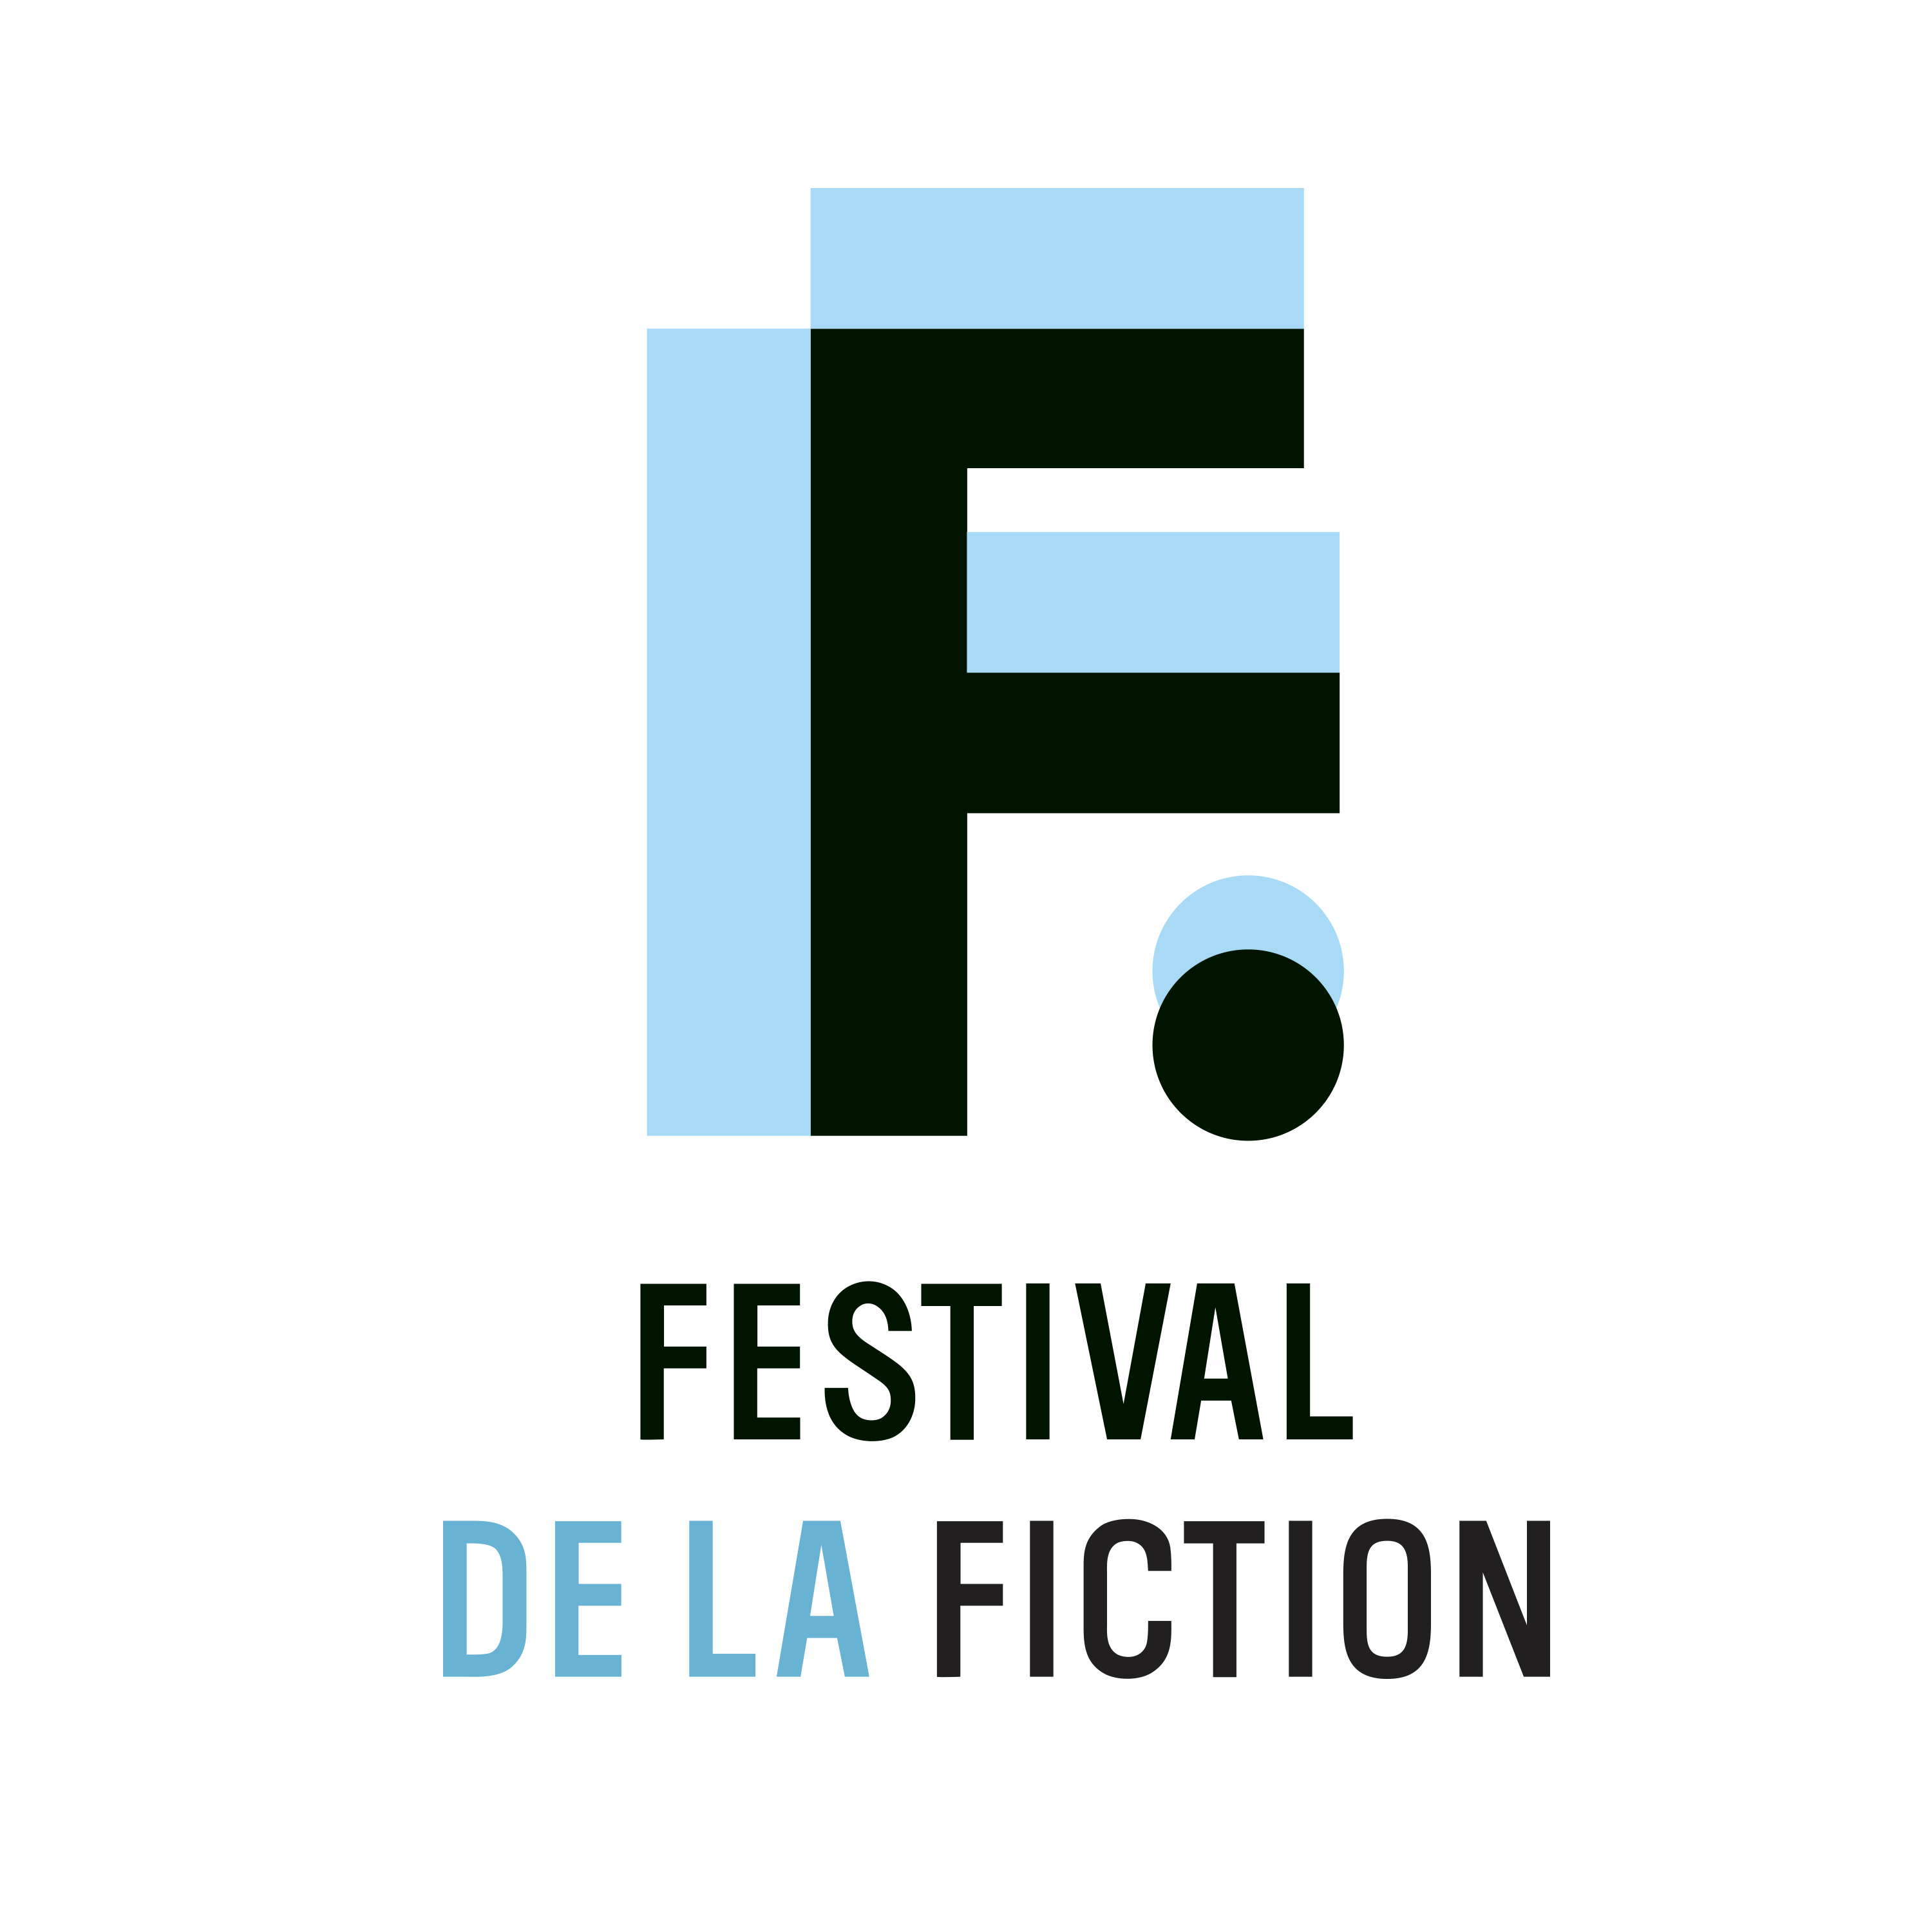 Le Festival de la fiction de La Rochelle : Le Festival de la fiction de La Rochelle est un festival de télévision créé en 1999, récompensant les œuvres de fiction francophones et internationales. Il se déroule chaque année en septembre.